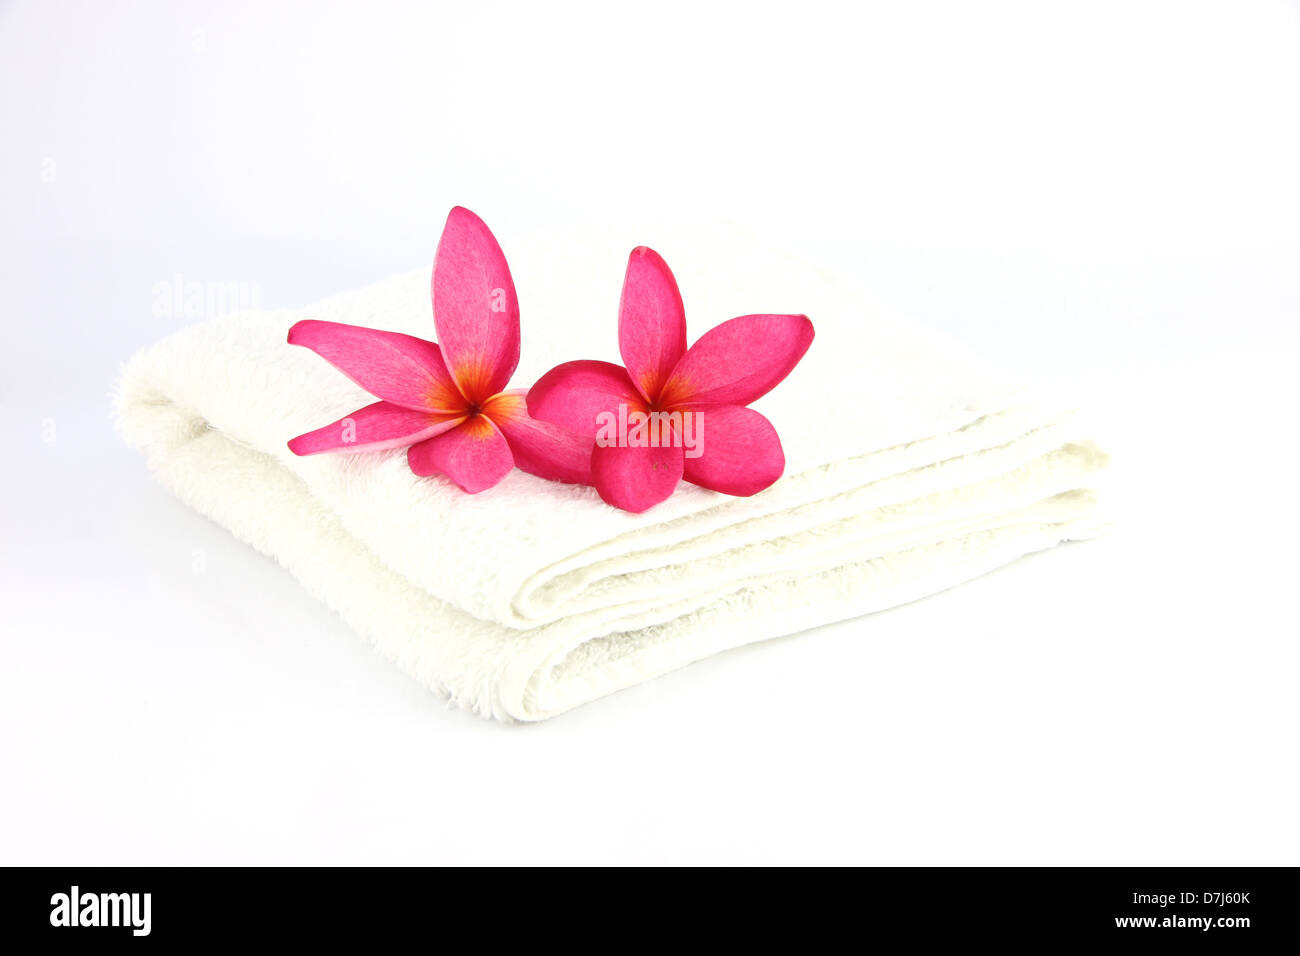 Les fleurs rouges avec une serviette blanche sur fond blanc. Banque D'Images